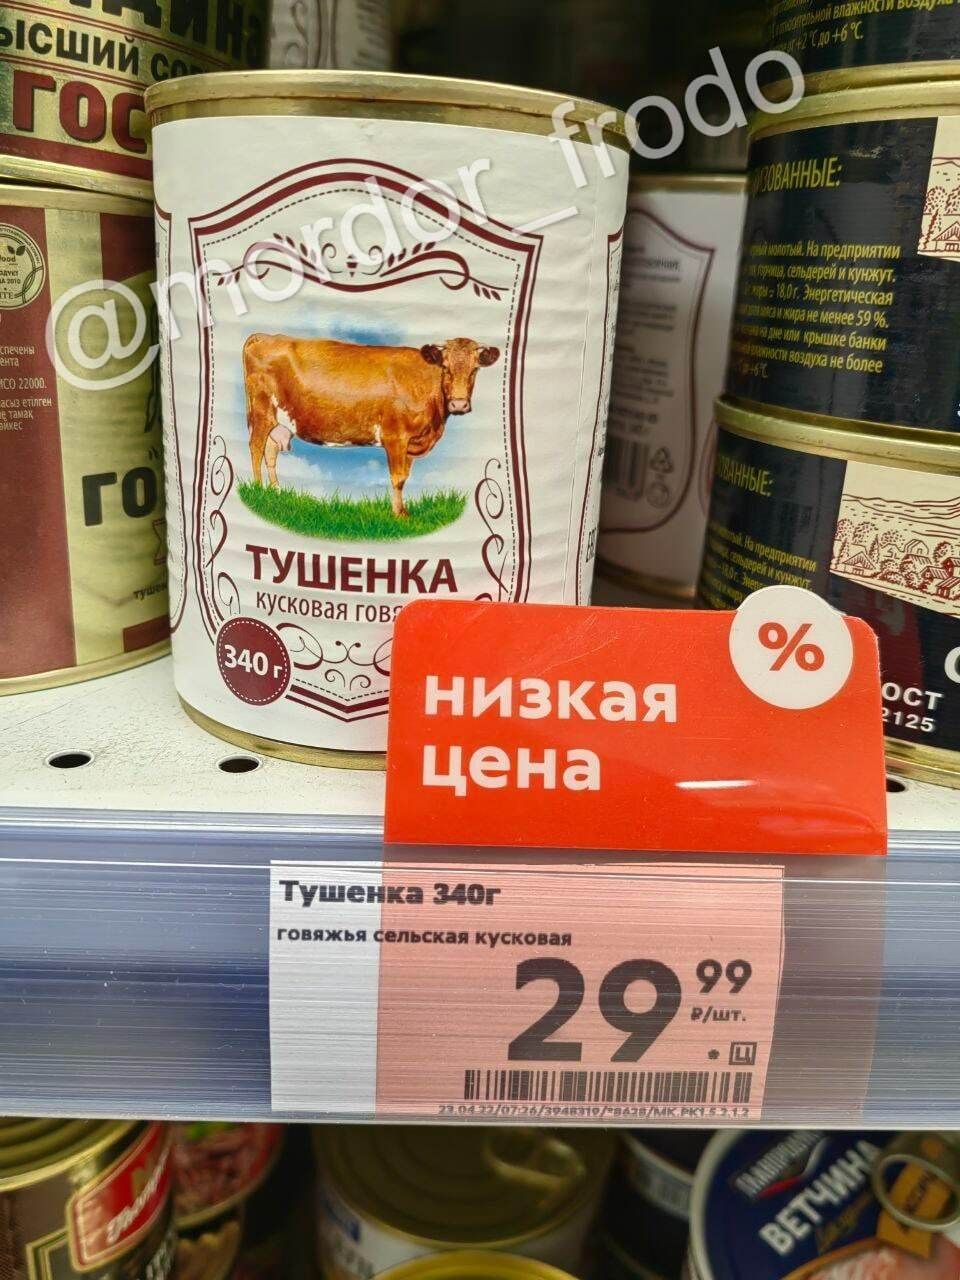 Тушенка, которую продают в супермаркетах РФ